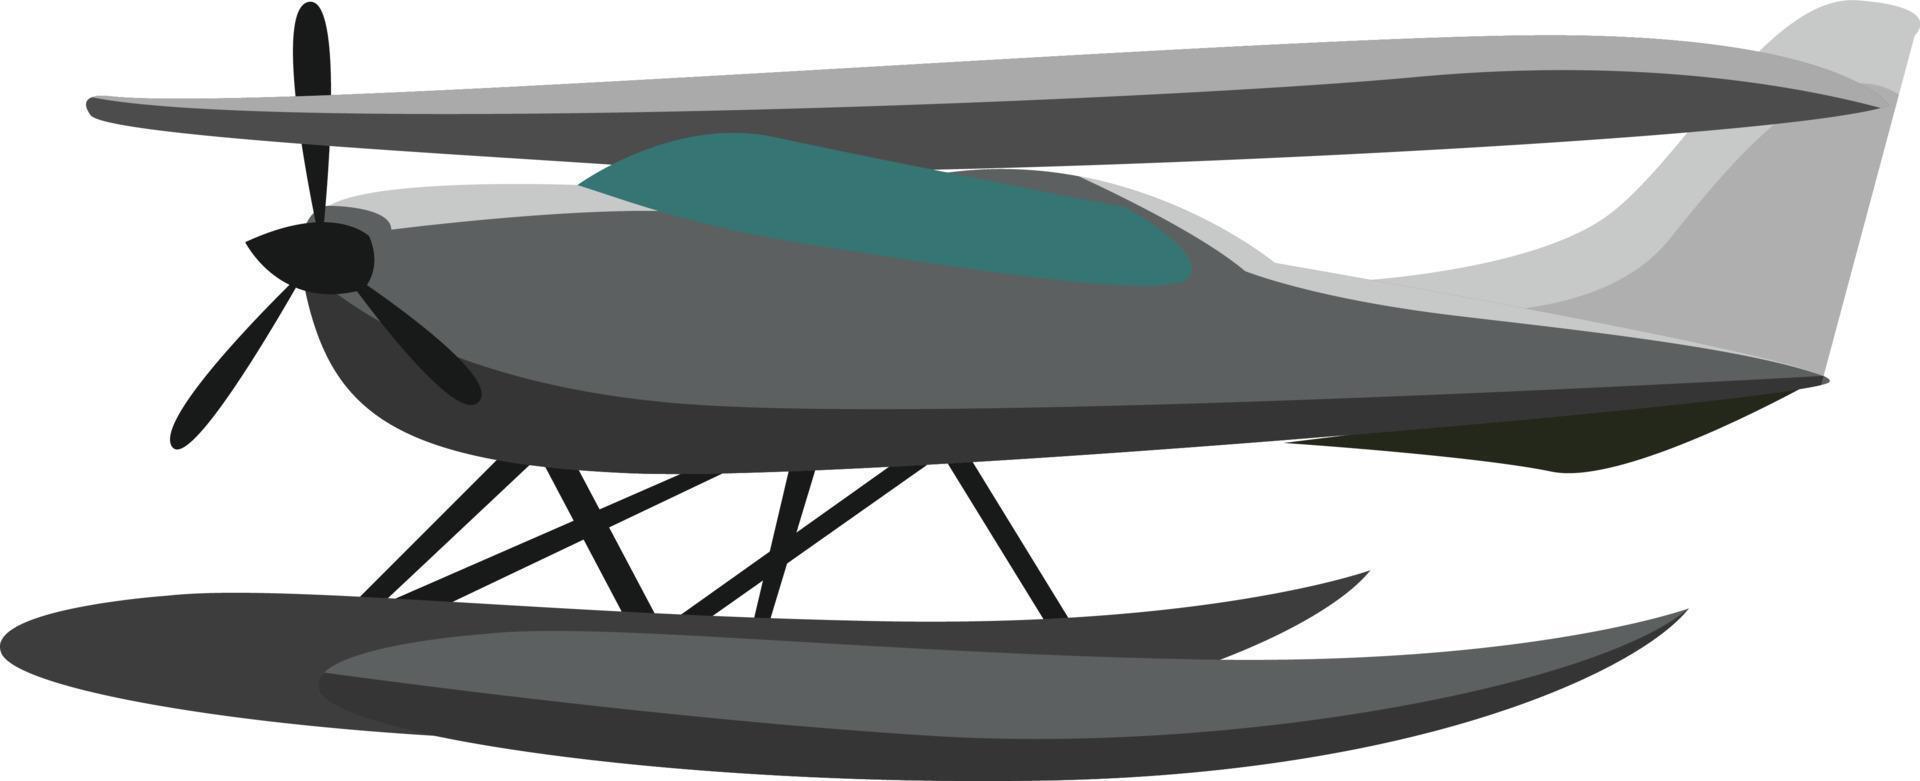 sjöflygplan på vatten, illustration, vektor på vit bakgrund